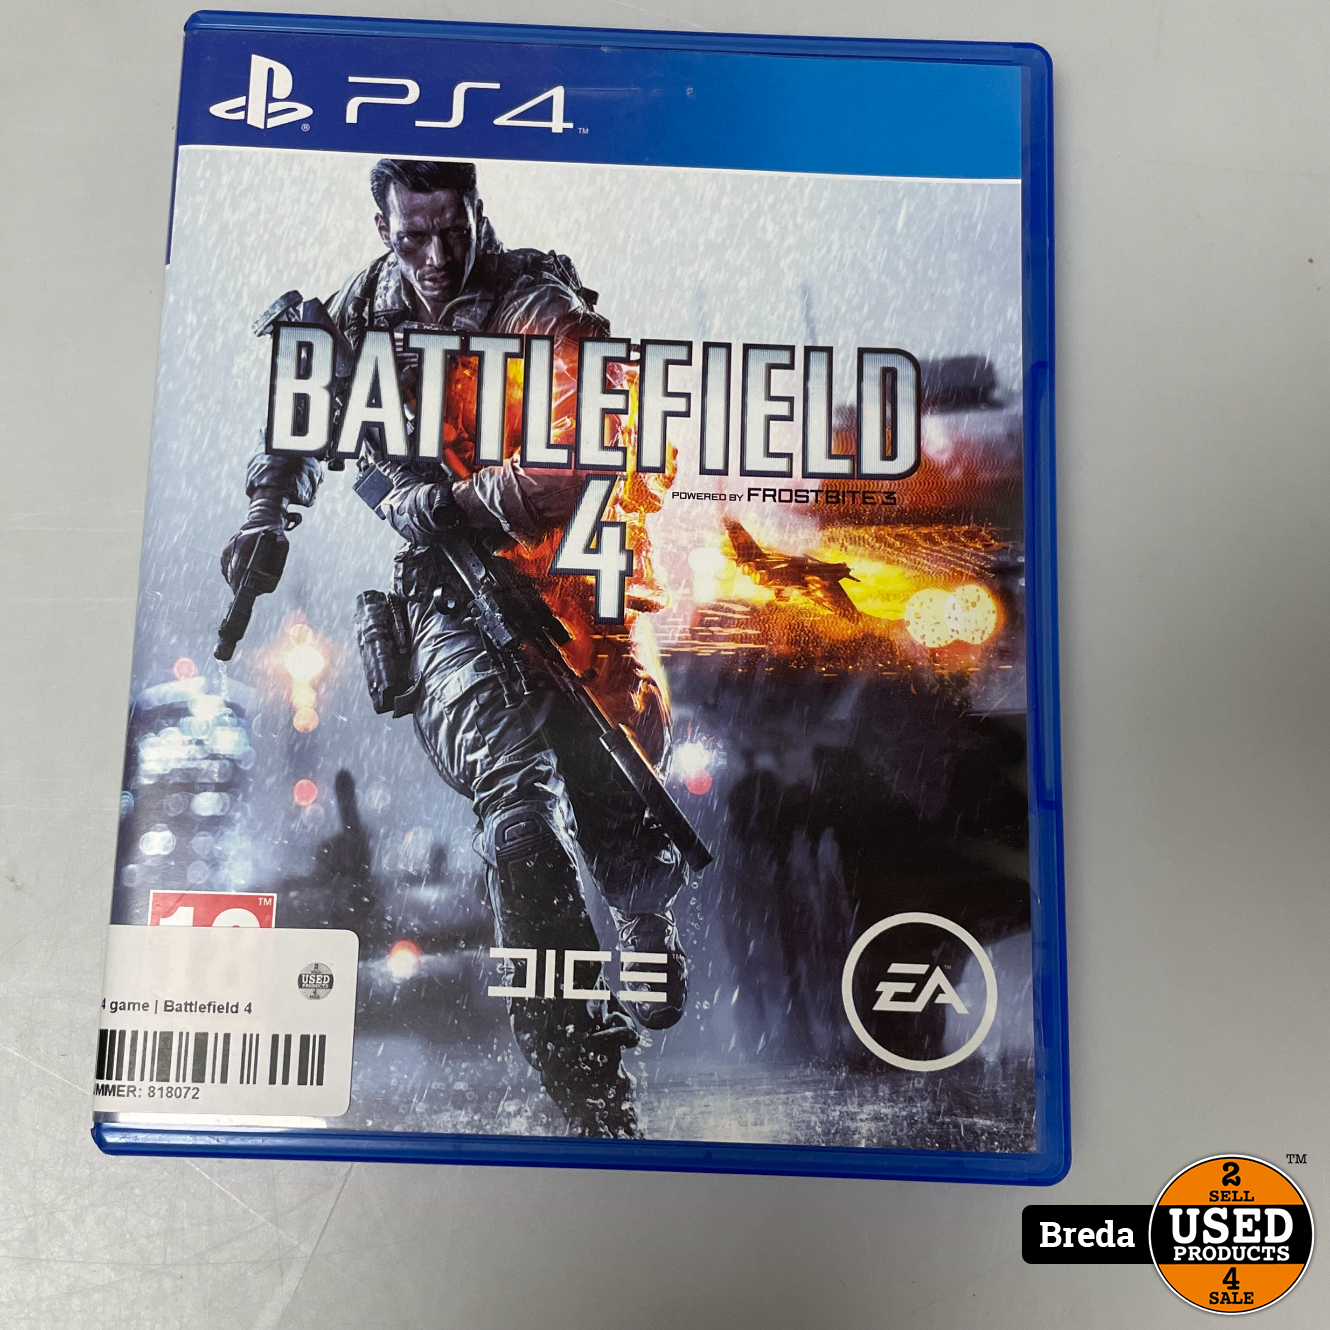 vier keer Tekstschrijver Australië Playstation 4 game | Battlefield 4 - Used Products Breda